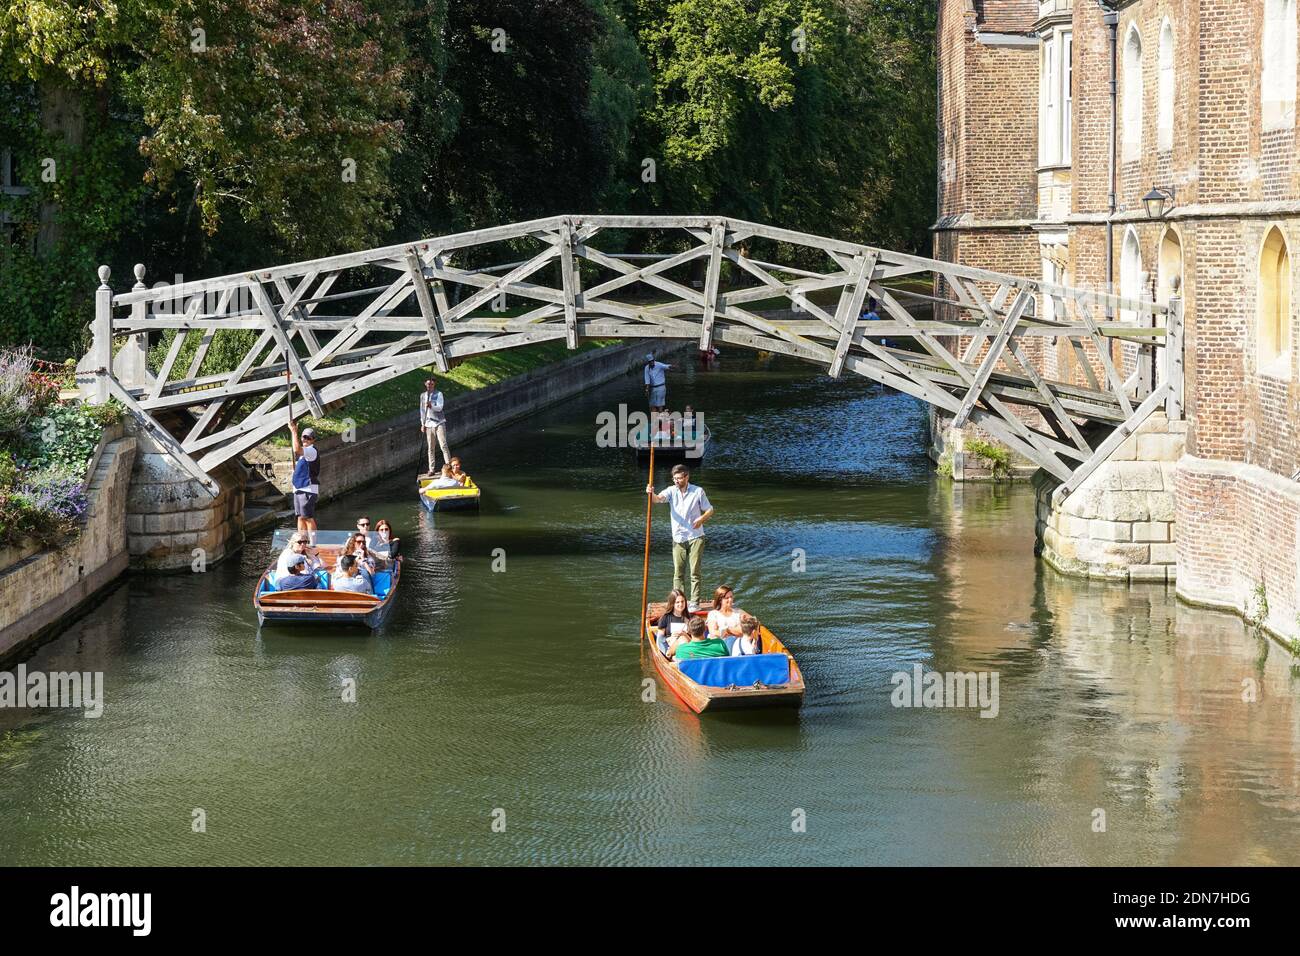 Touristes sur les punts sur la rivière Cam sous le pont mathématique À Cambridge Cambridgeshire Angleterre Royaume-Uni Banque D'Images